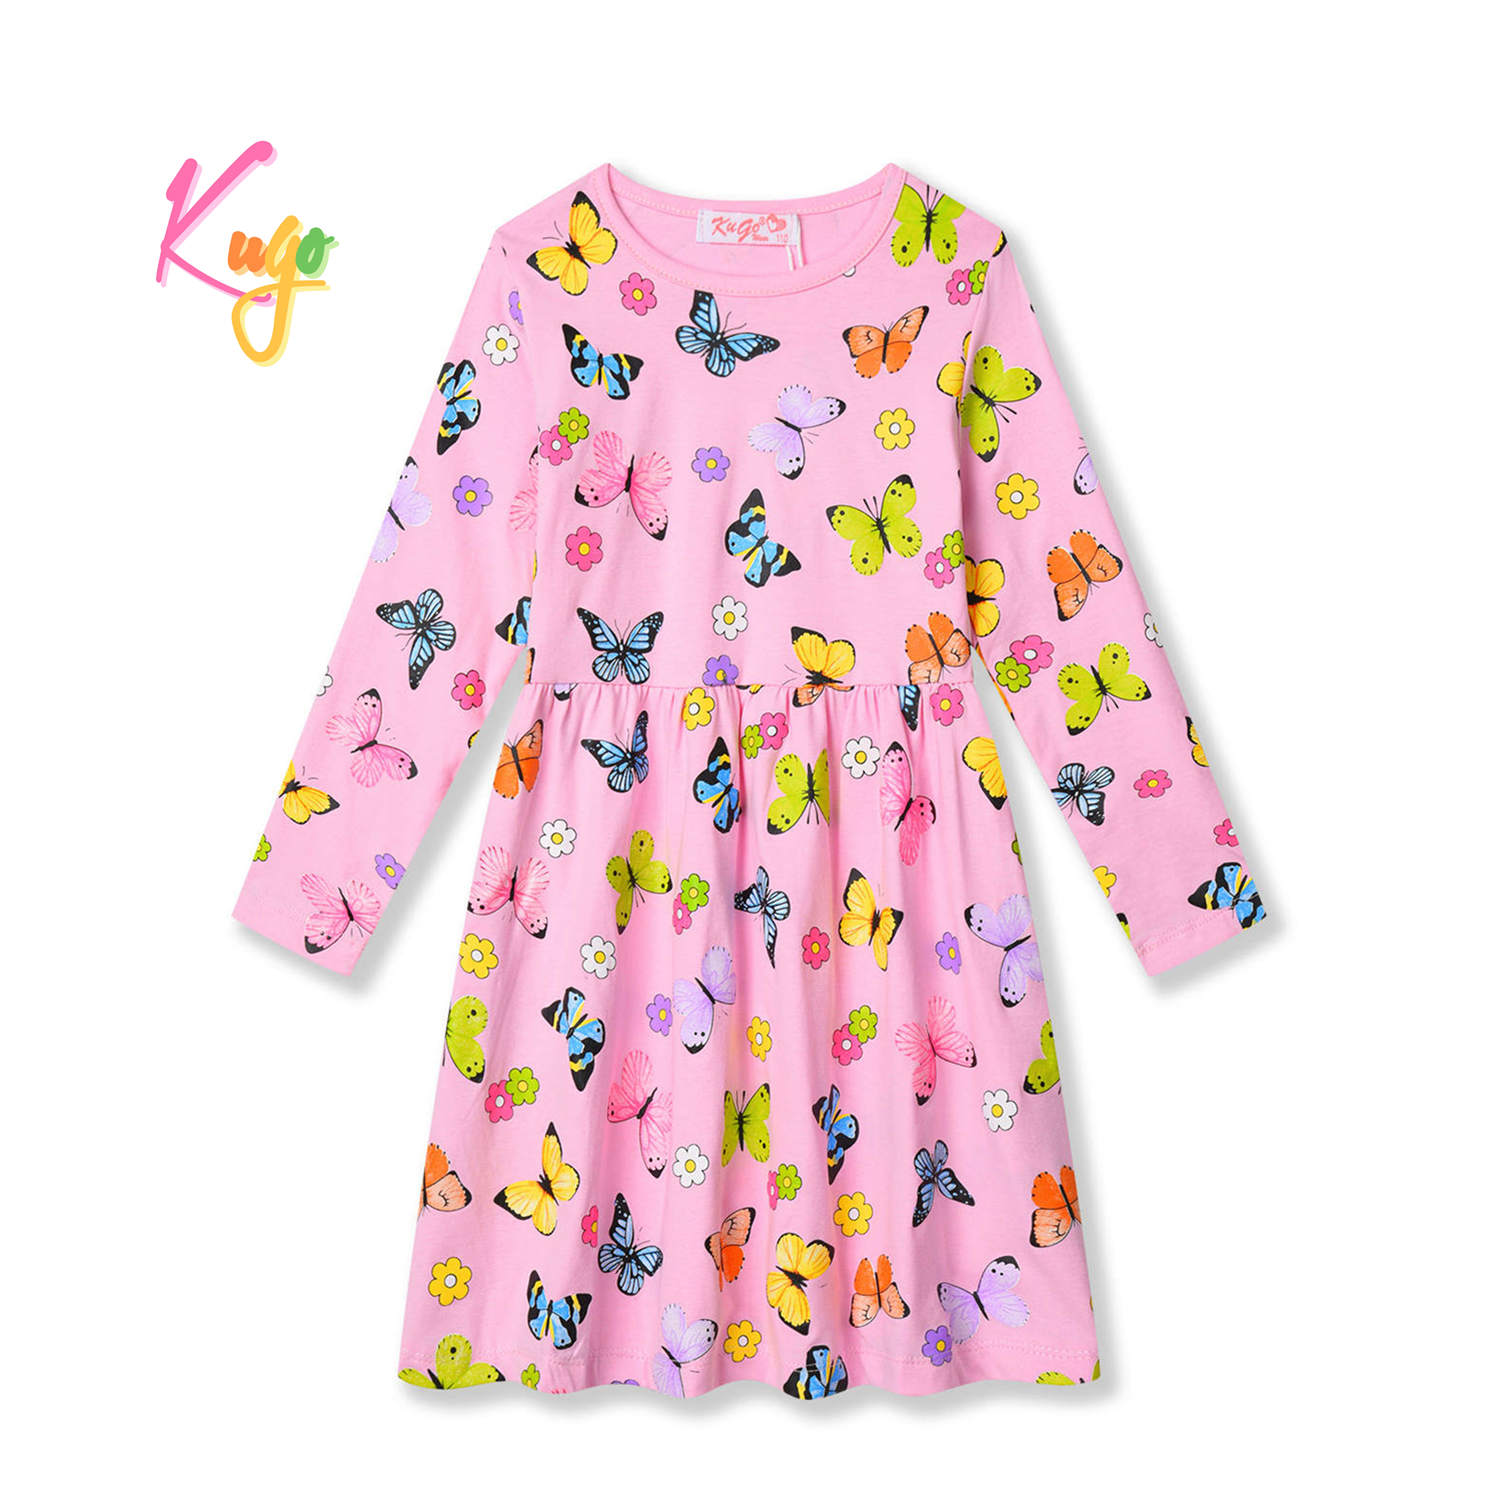 Dívčí šaty - KUGO HC9319, světle růžová Barva: Růžová, Velikost: 98